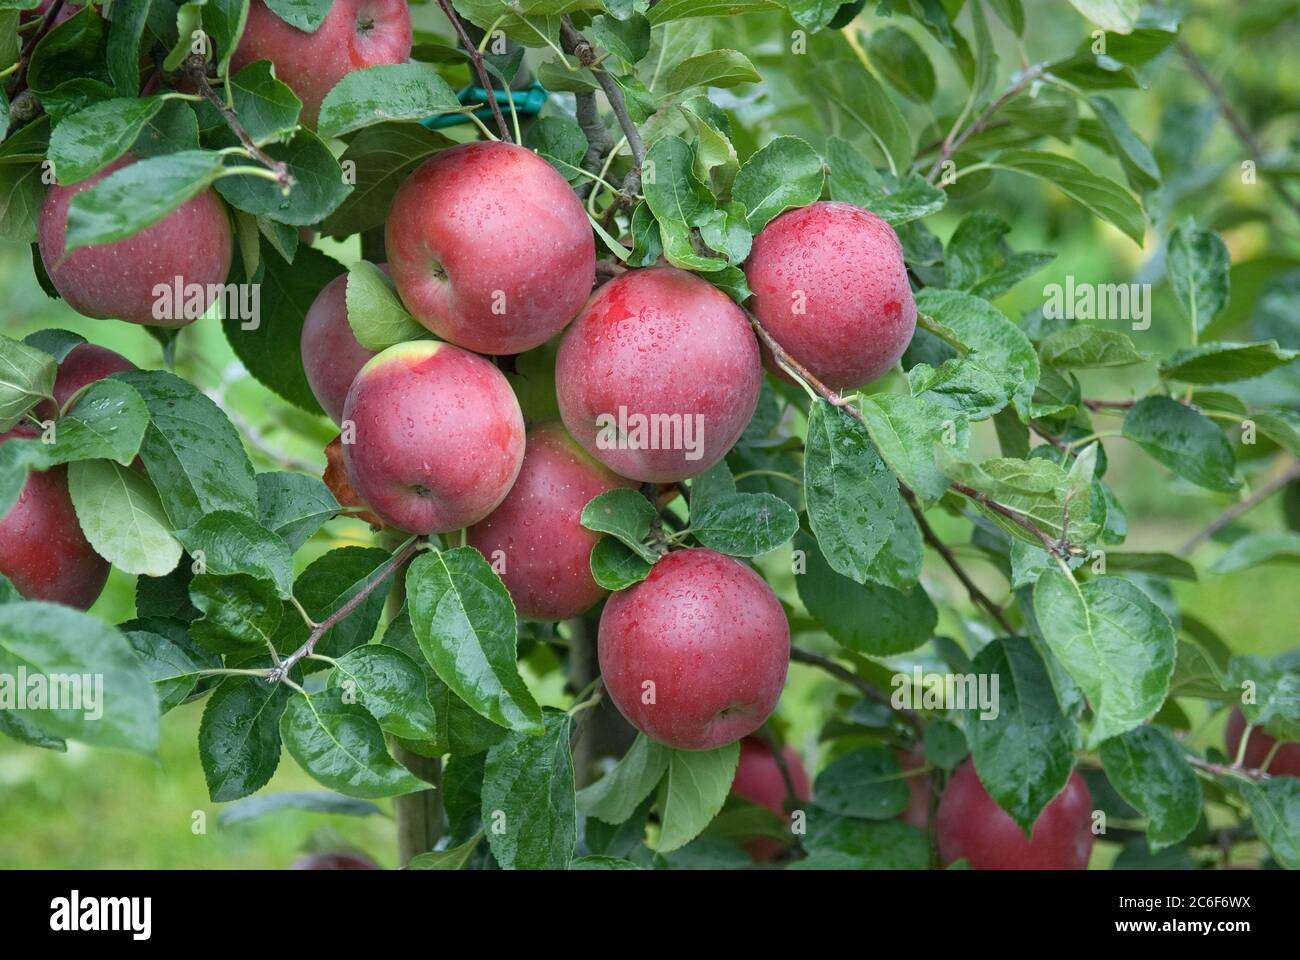 Apfel, Malus domestica Enterprise, Apple, Malus domestica enterprise Stock Photo